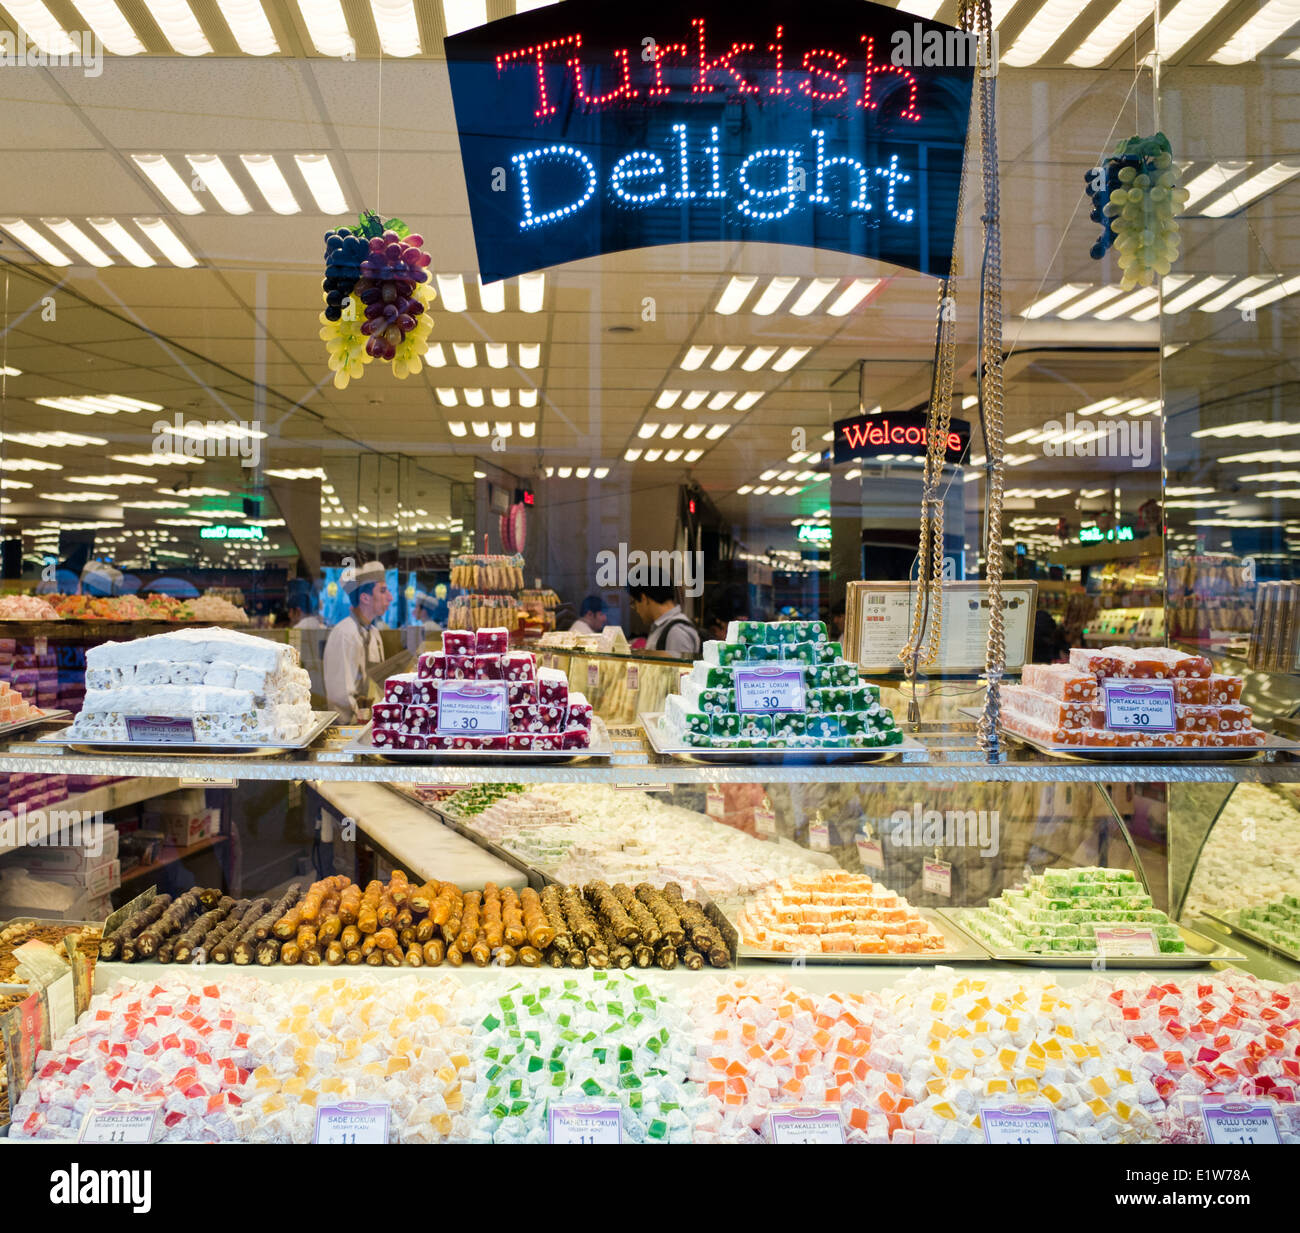 Turkish delight on sale in Turkey Stock Photo